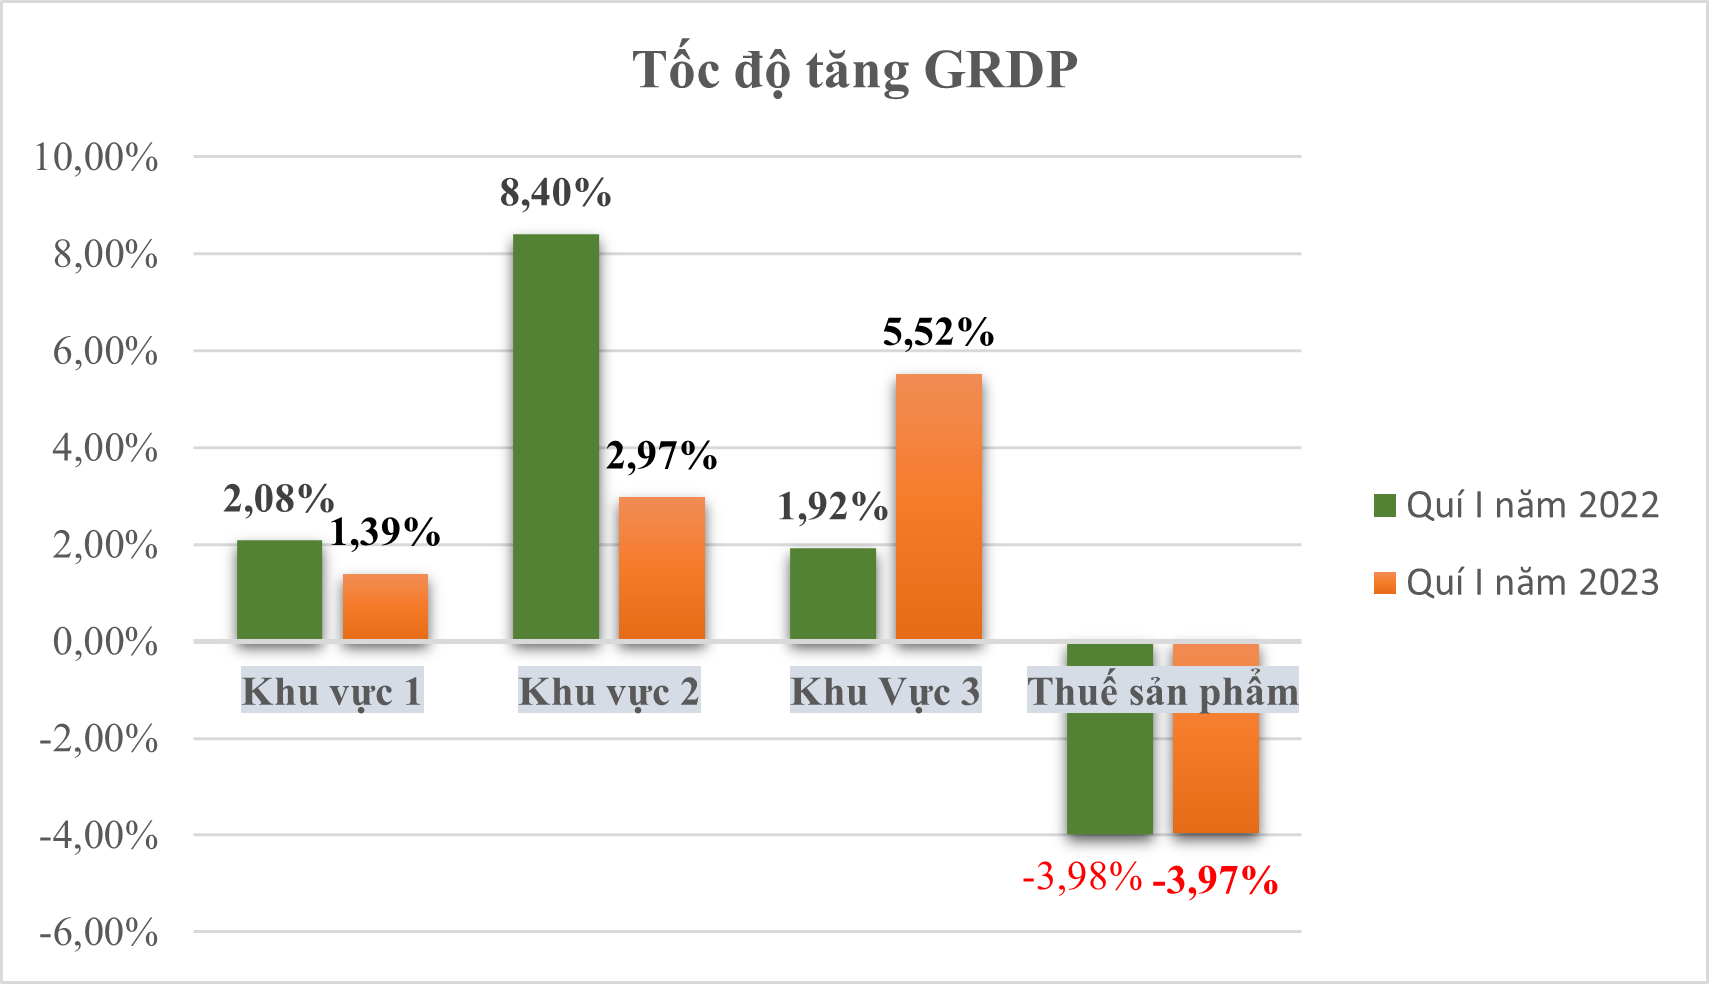 Tổng sản phẩm trên địa bàn quí I năm 2023 Tiền Giang đạt 2,66%